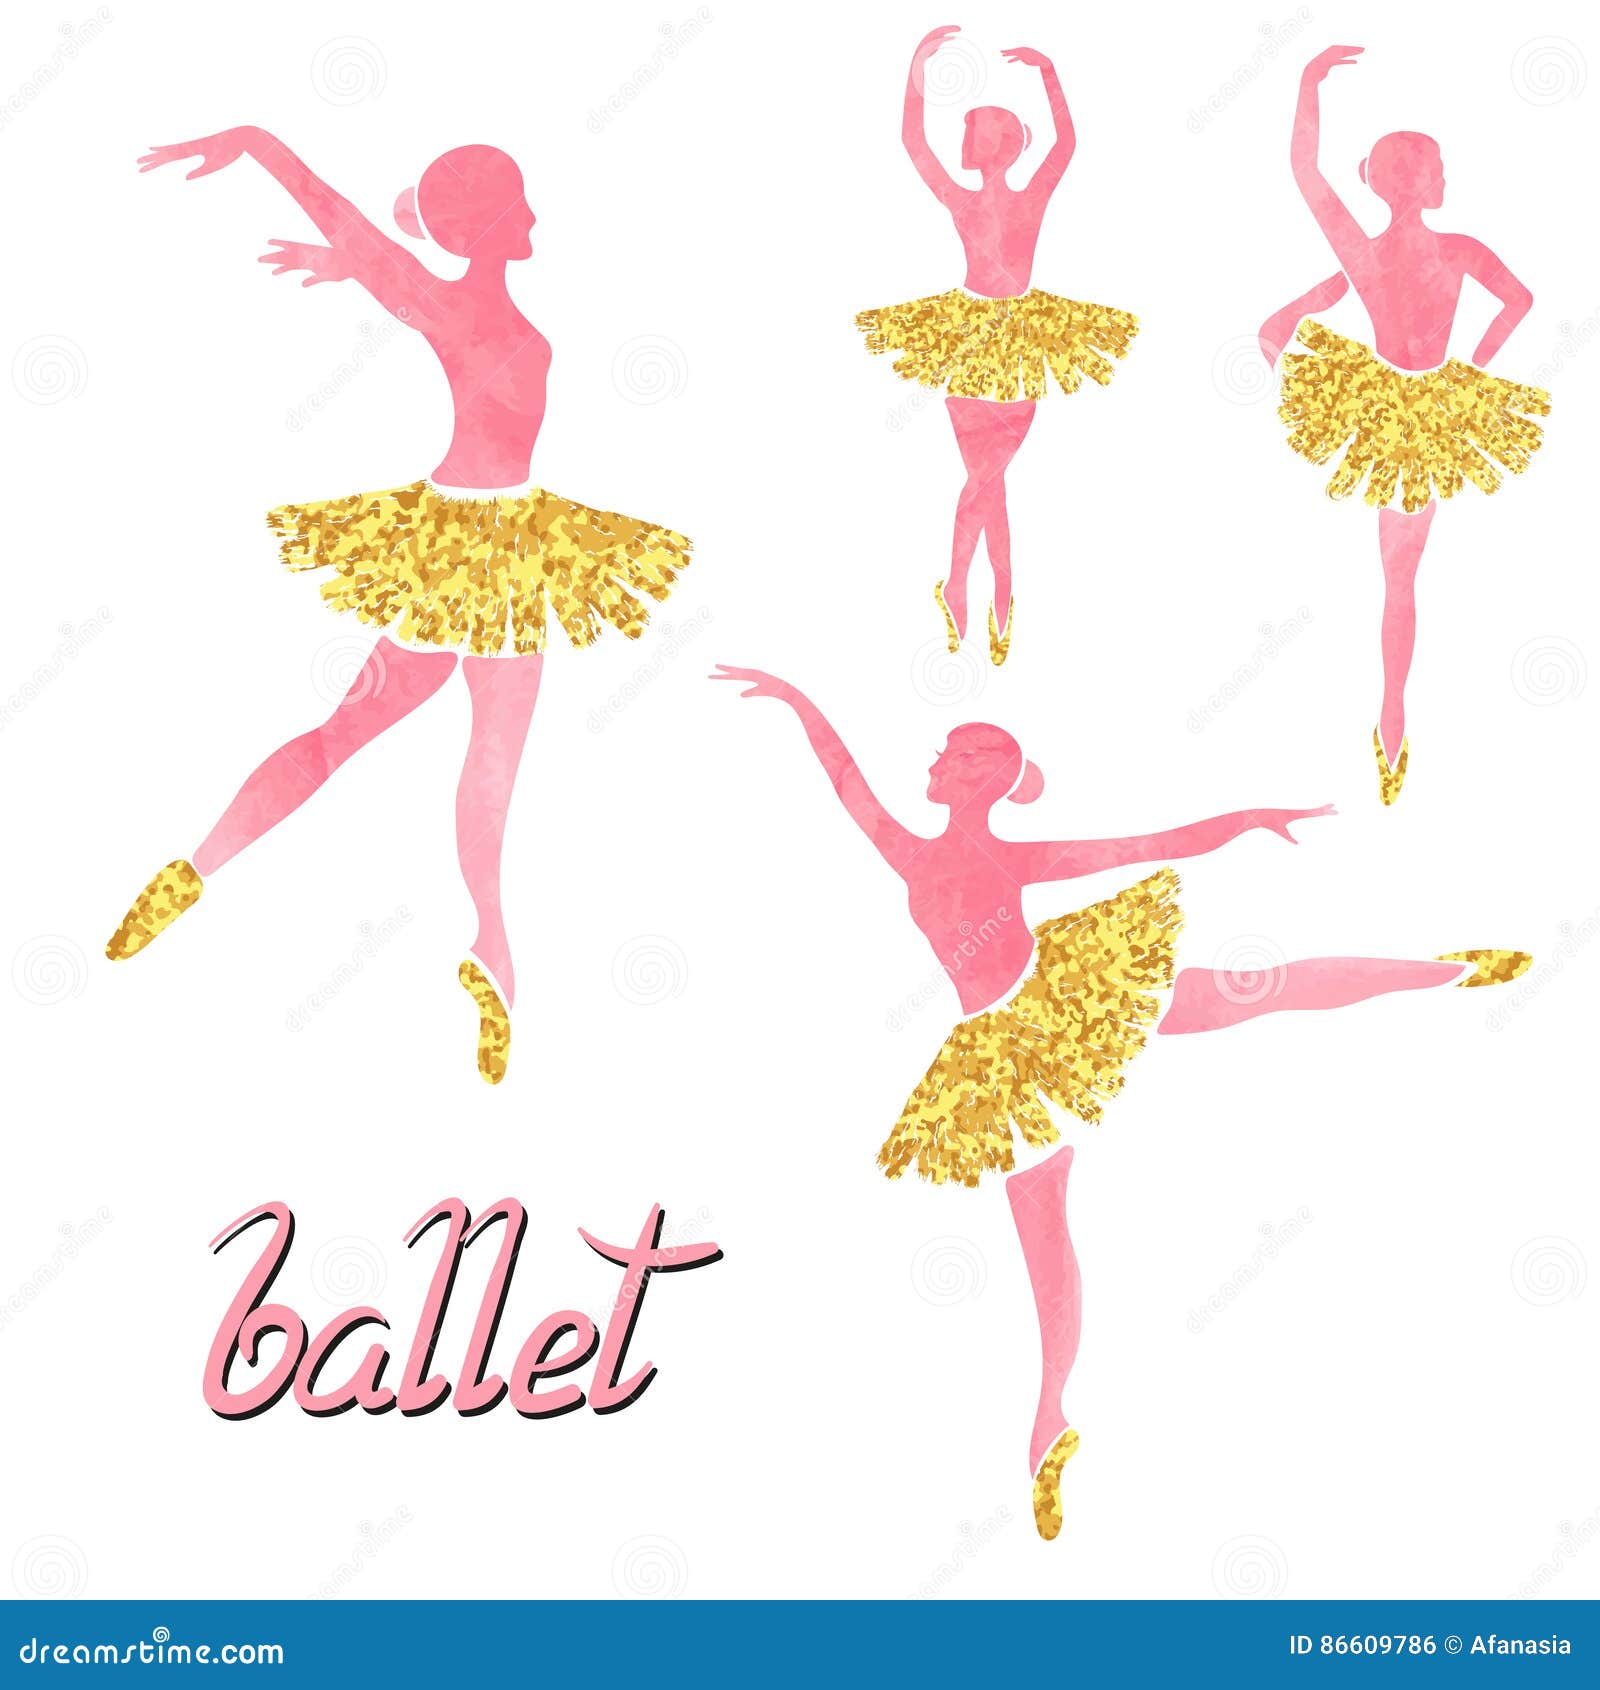 Featured image of post Silueta Dibujos De Bailarinas De Ballet A Color 48 im genes png 24 en negro y 24 en blanco alta resoluci n m s de 300 ppp png grande con transparencia de cada clip art en aprox